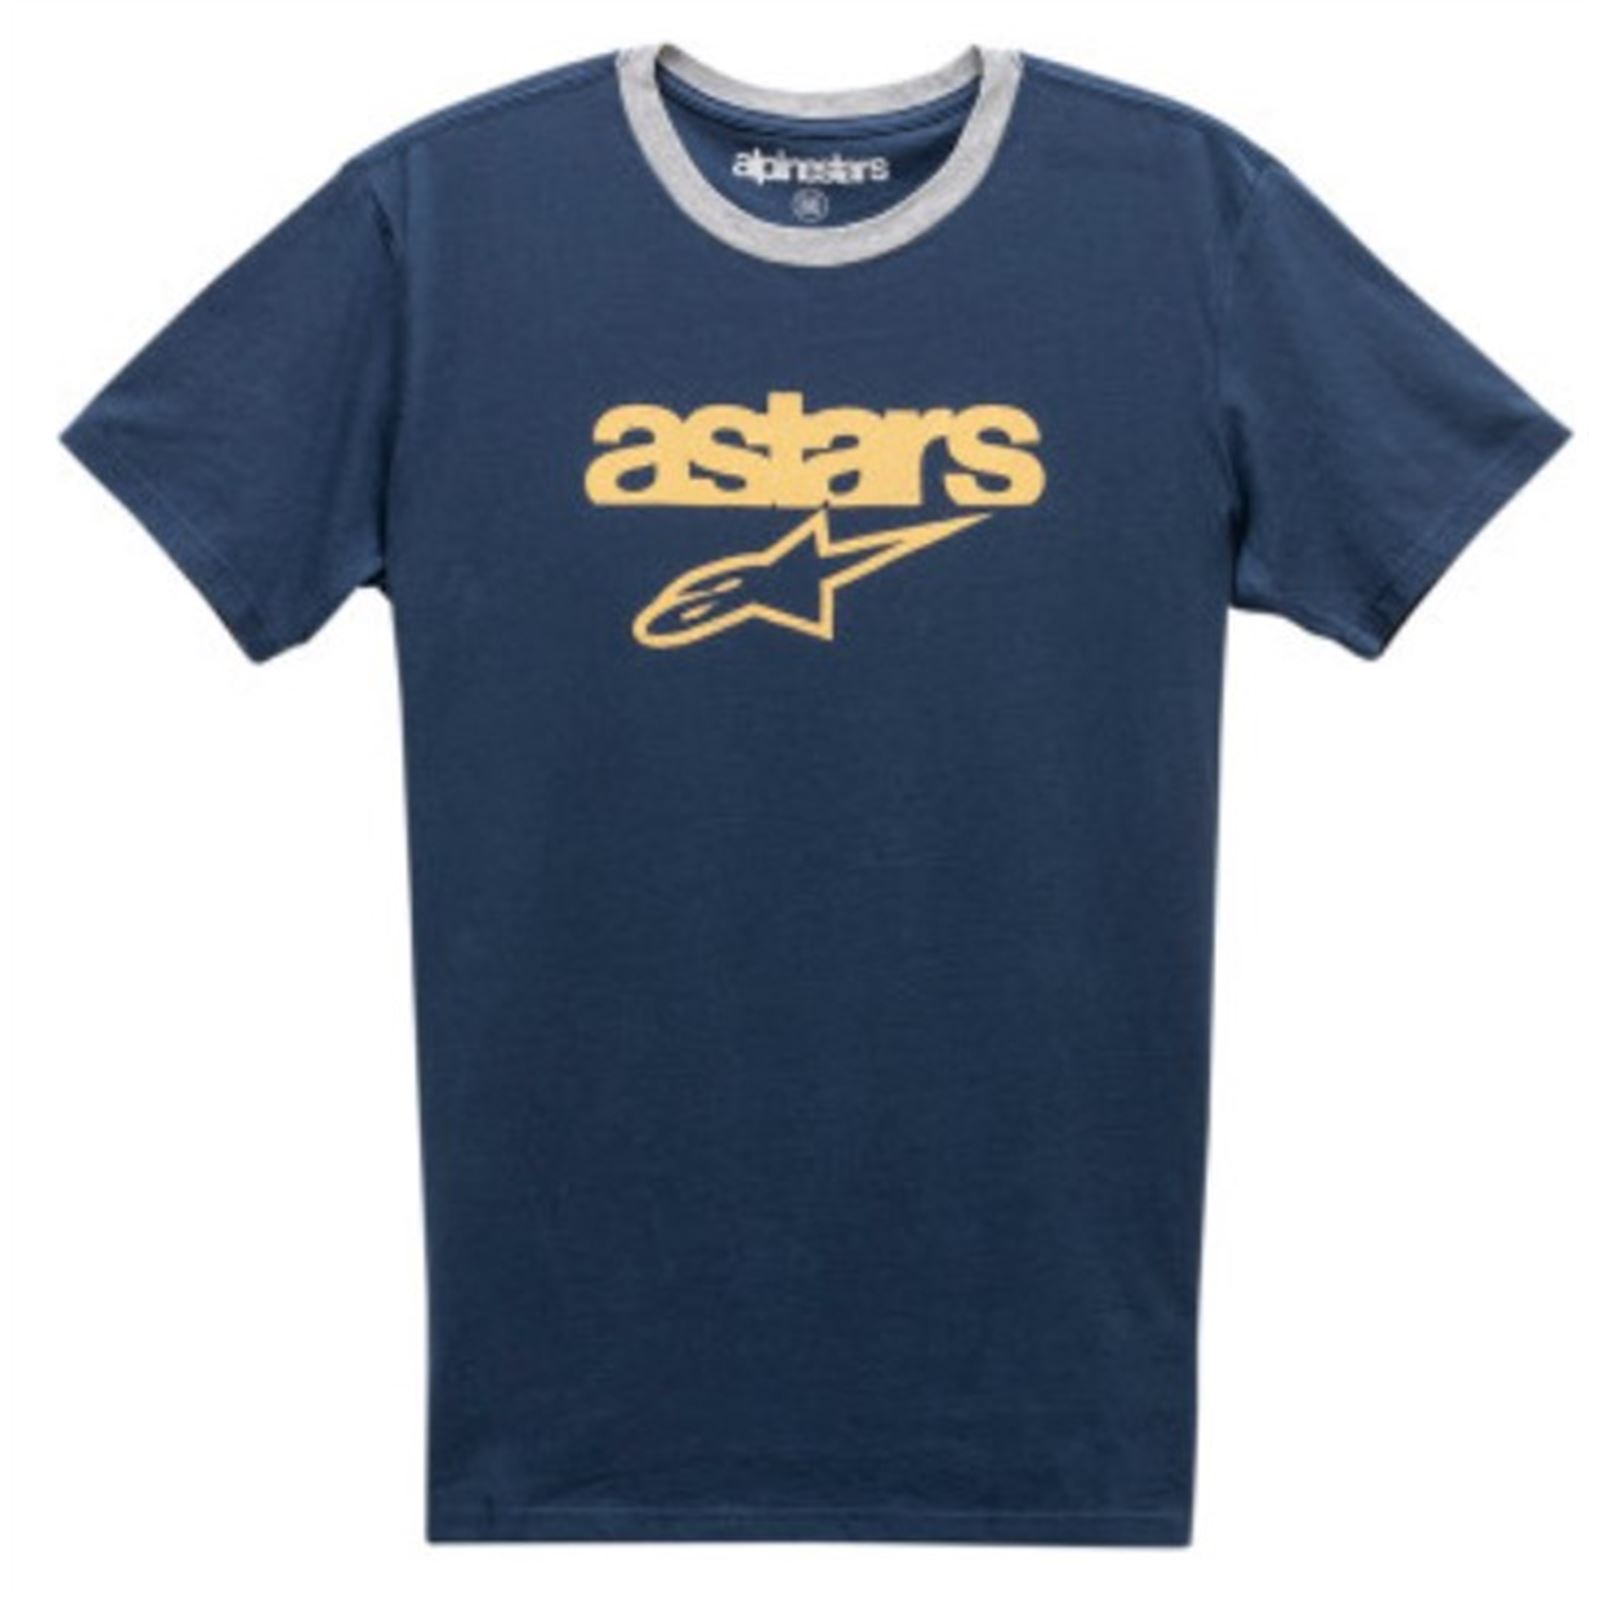 Alpinestars Match T-Shirt - Navy/Gray - Medium